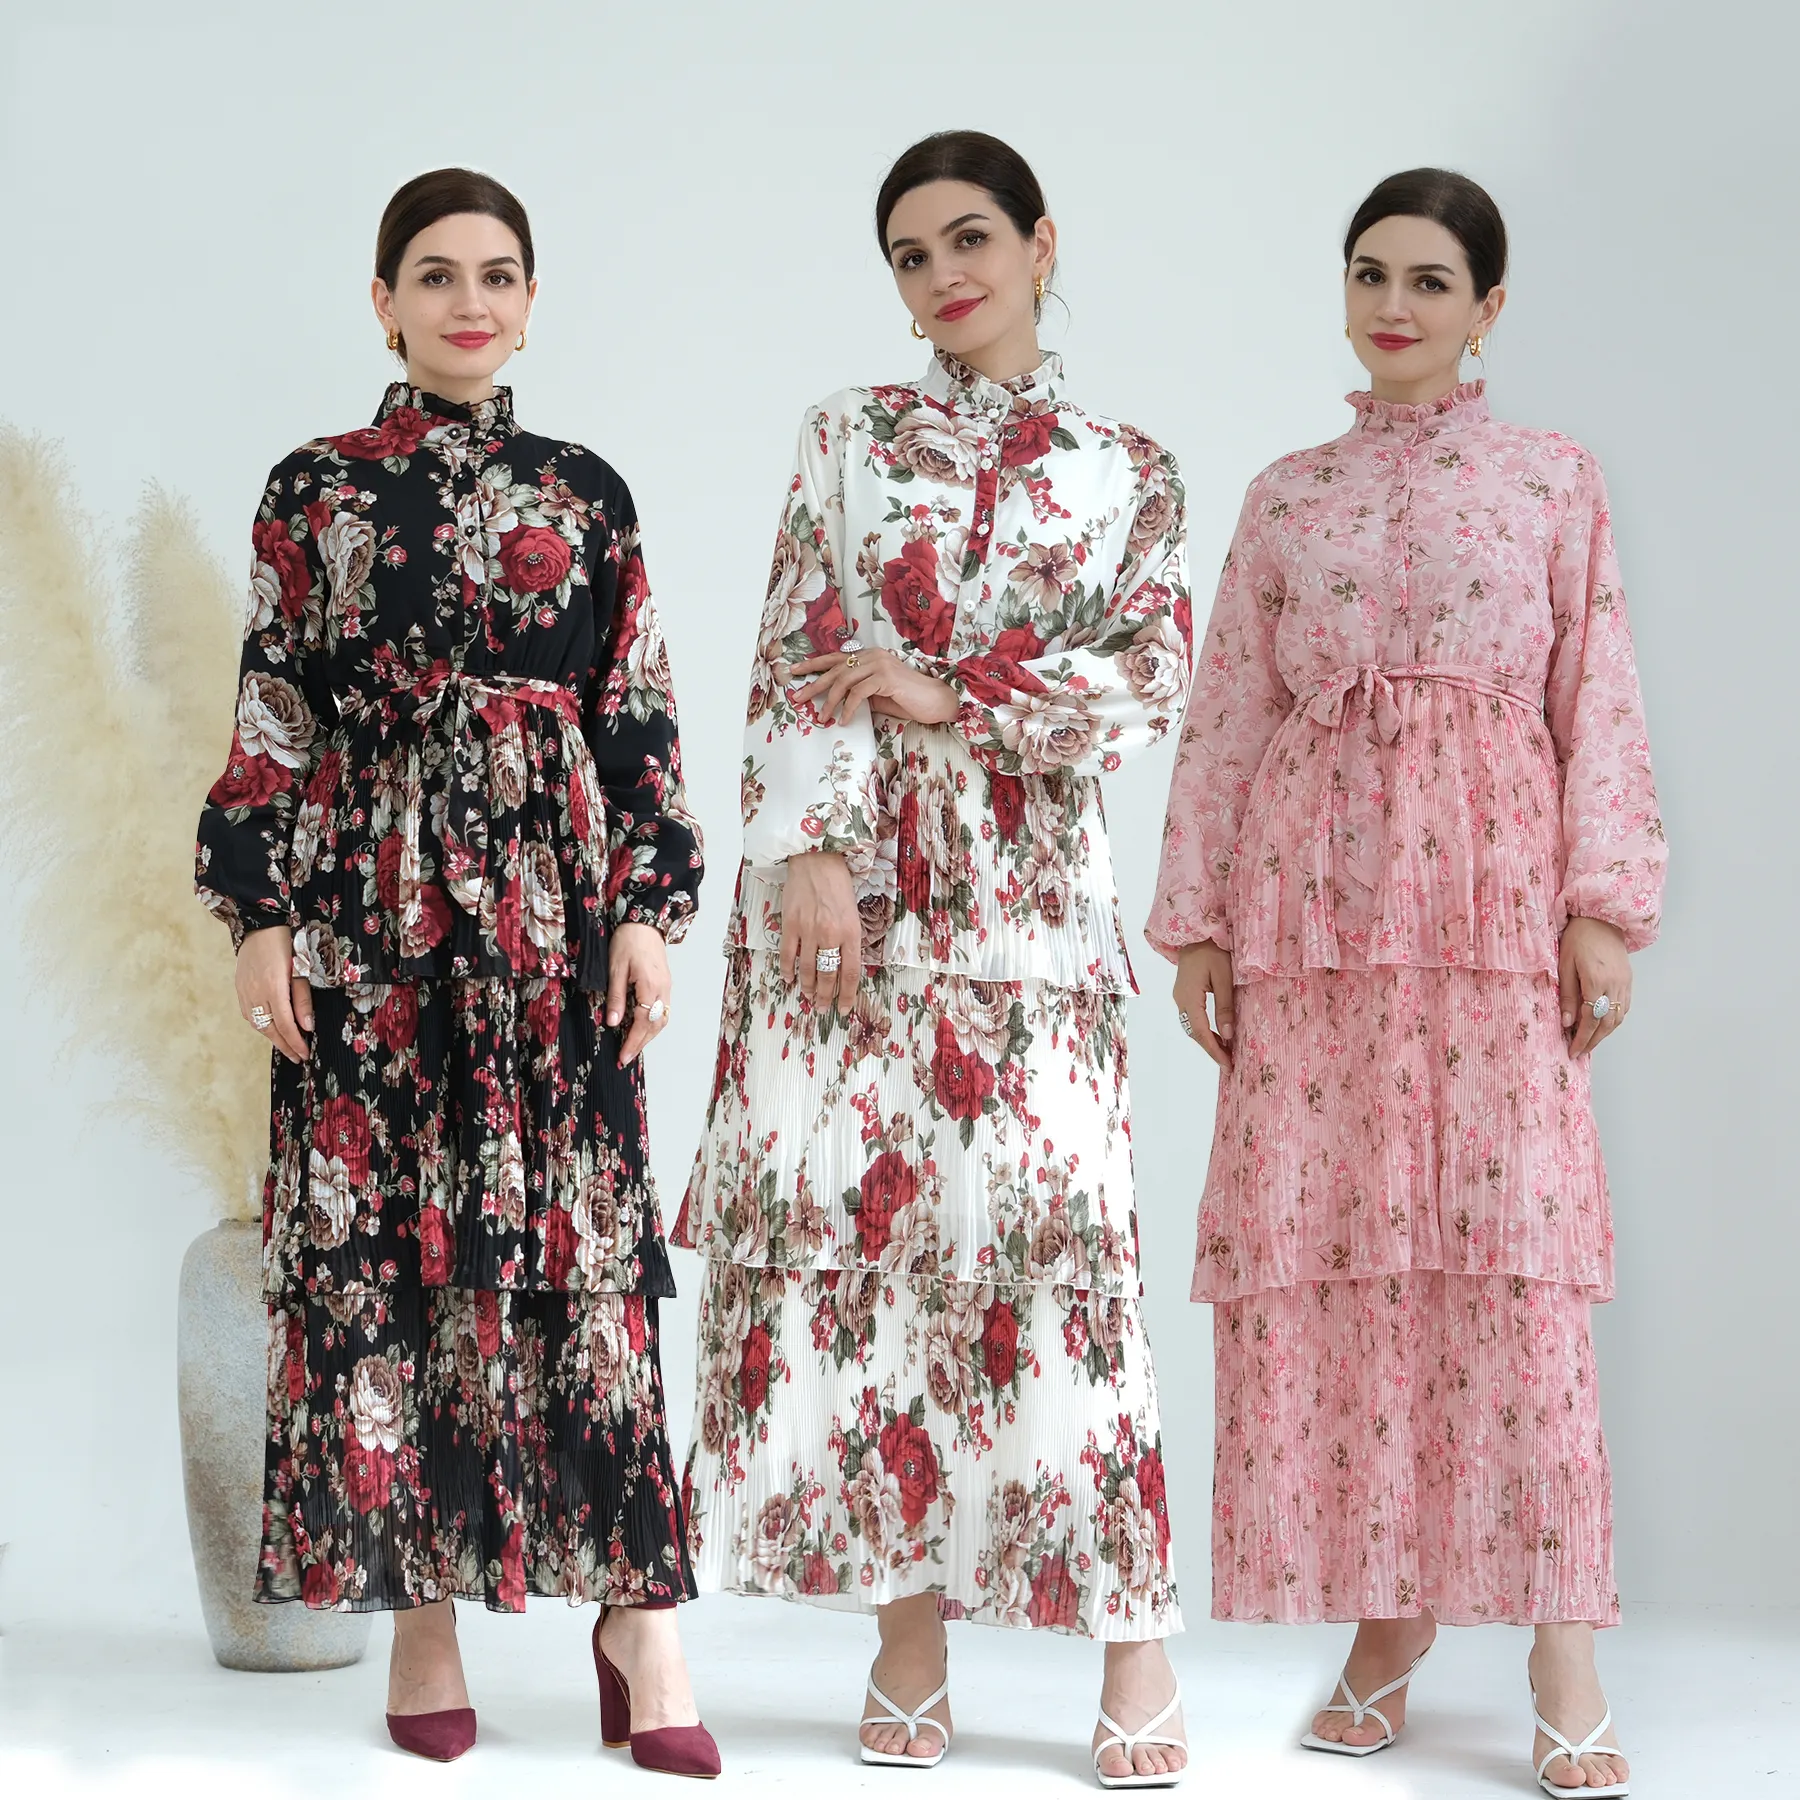 Europäisch-Amerikanisches elegantes Blumendruck 3-Schichten chiffon-Kleid chiffon-Knöchel-langes muslimisches Kleid Damen-Abaya